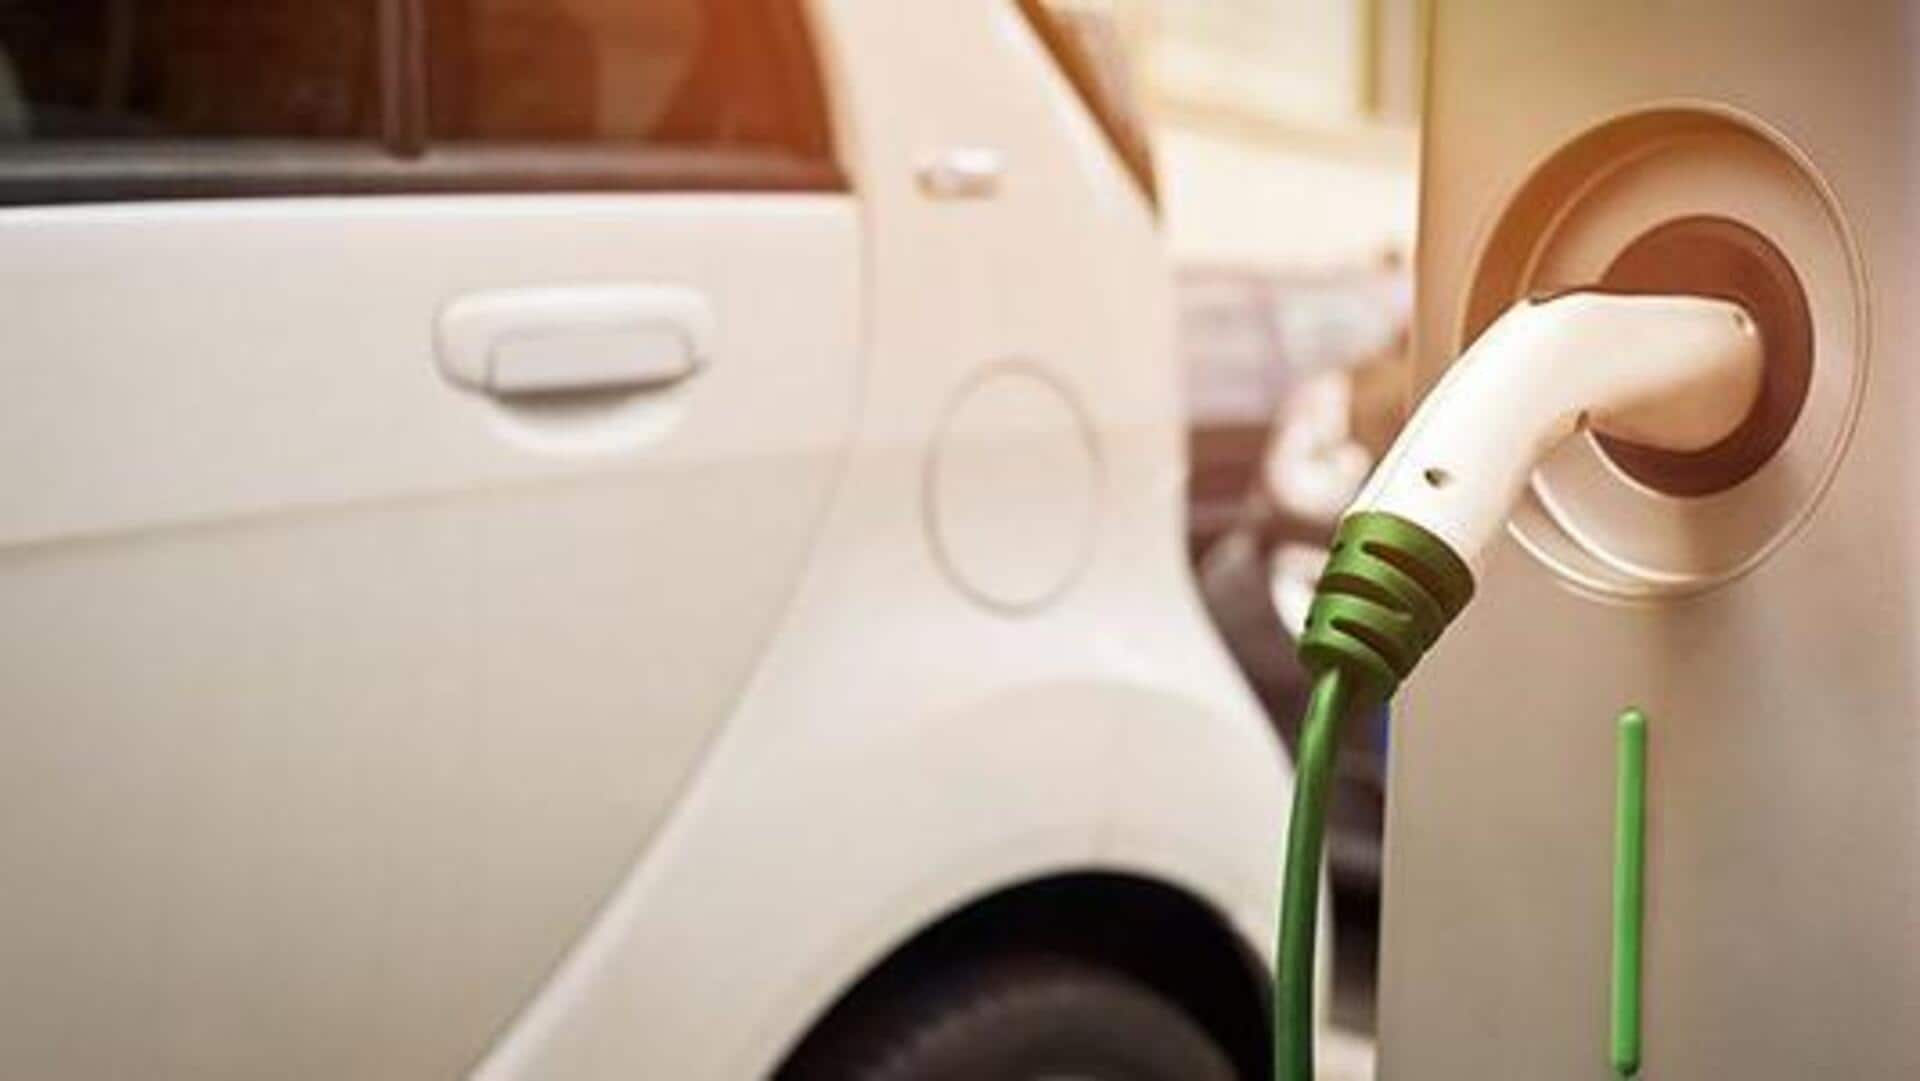 दिल्ली में 42 नई जगहों पर मिलेगी इलेक्ट्रिक वाहन चार्जिंग और बैटरी स्वैपिंग की सुविधा   